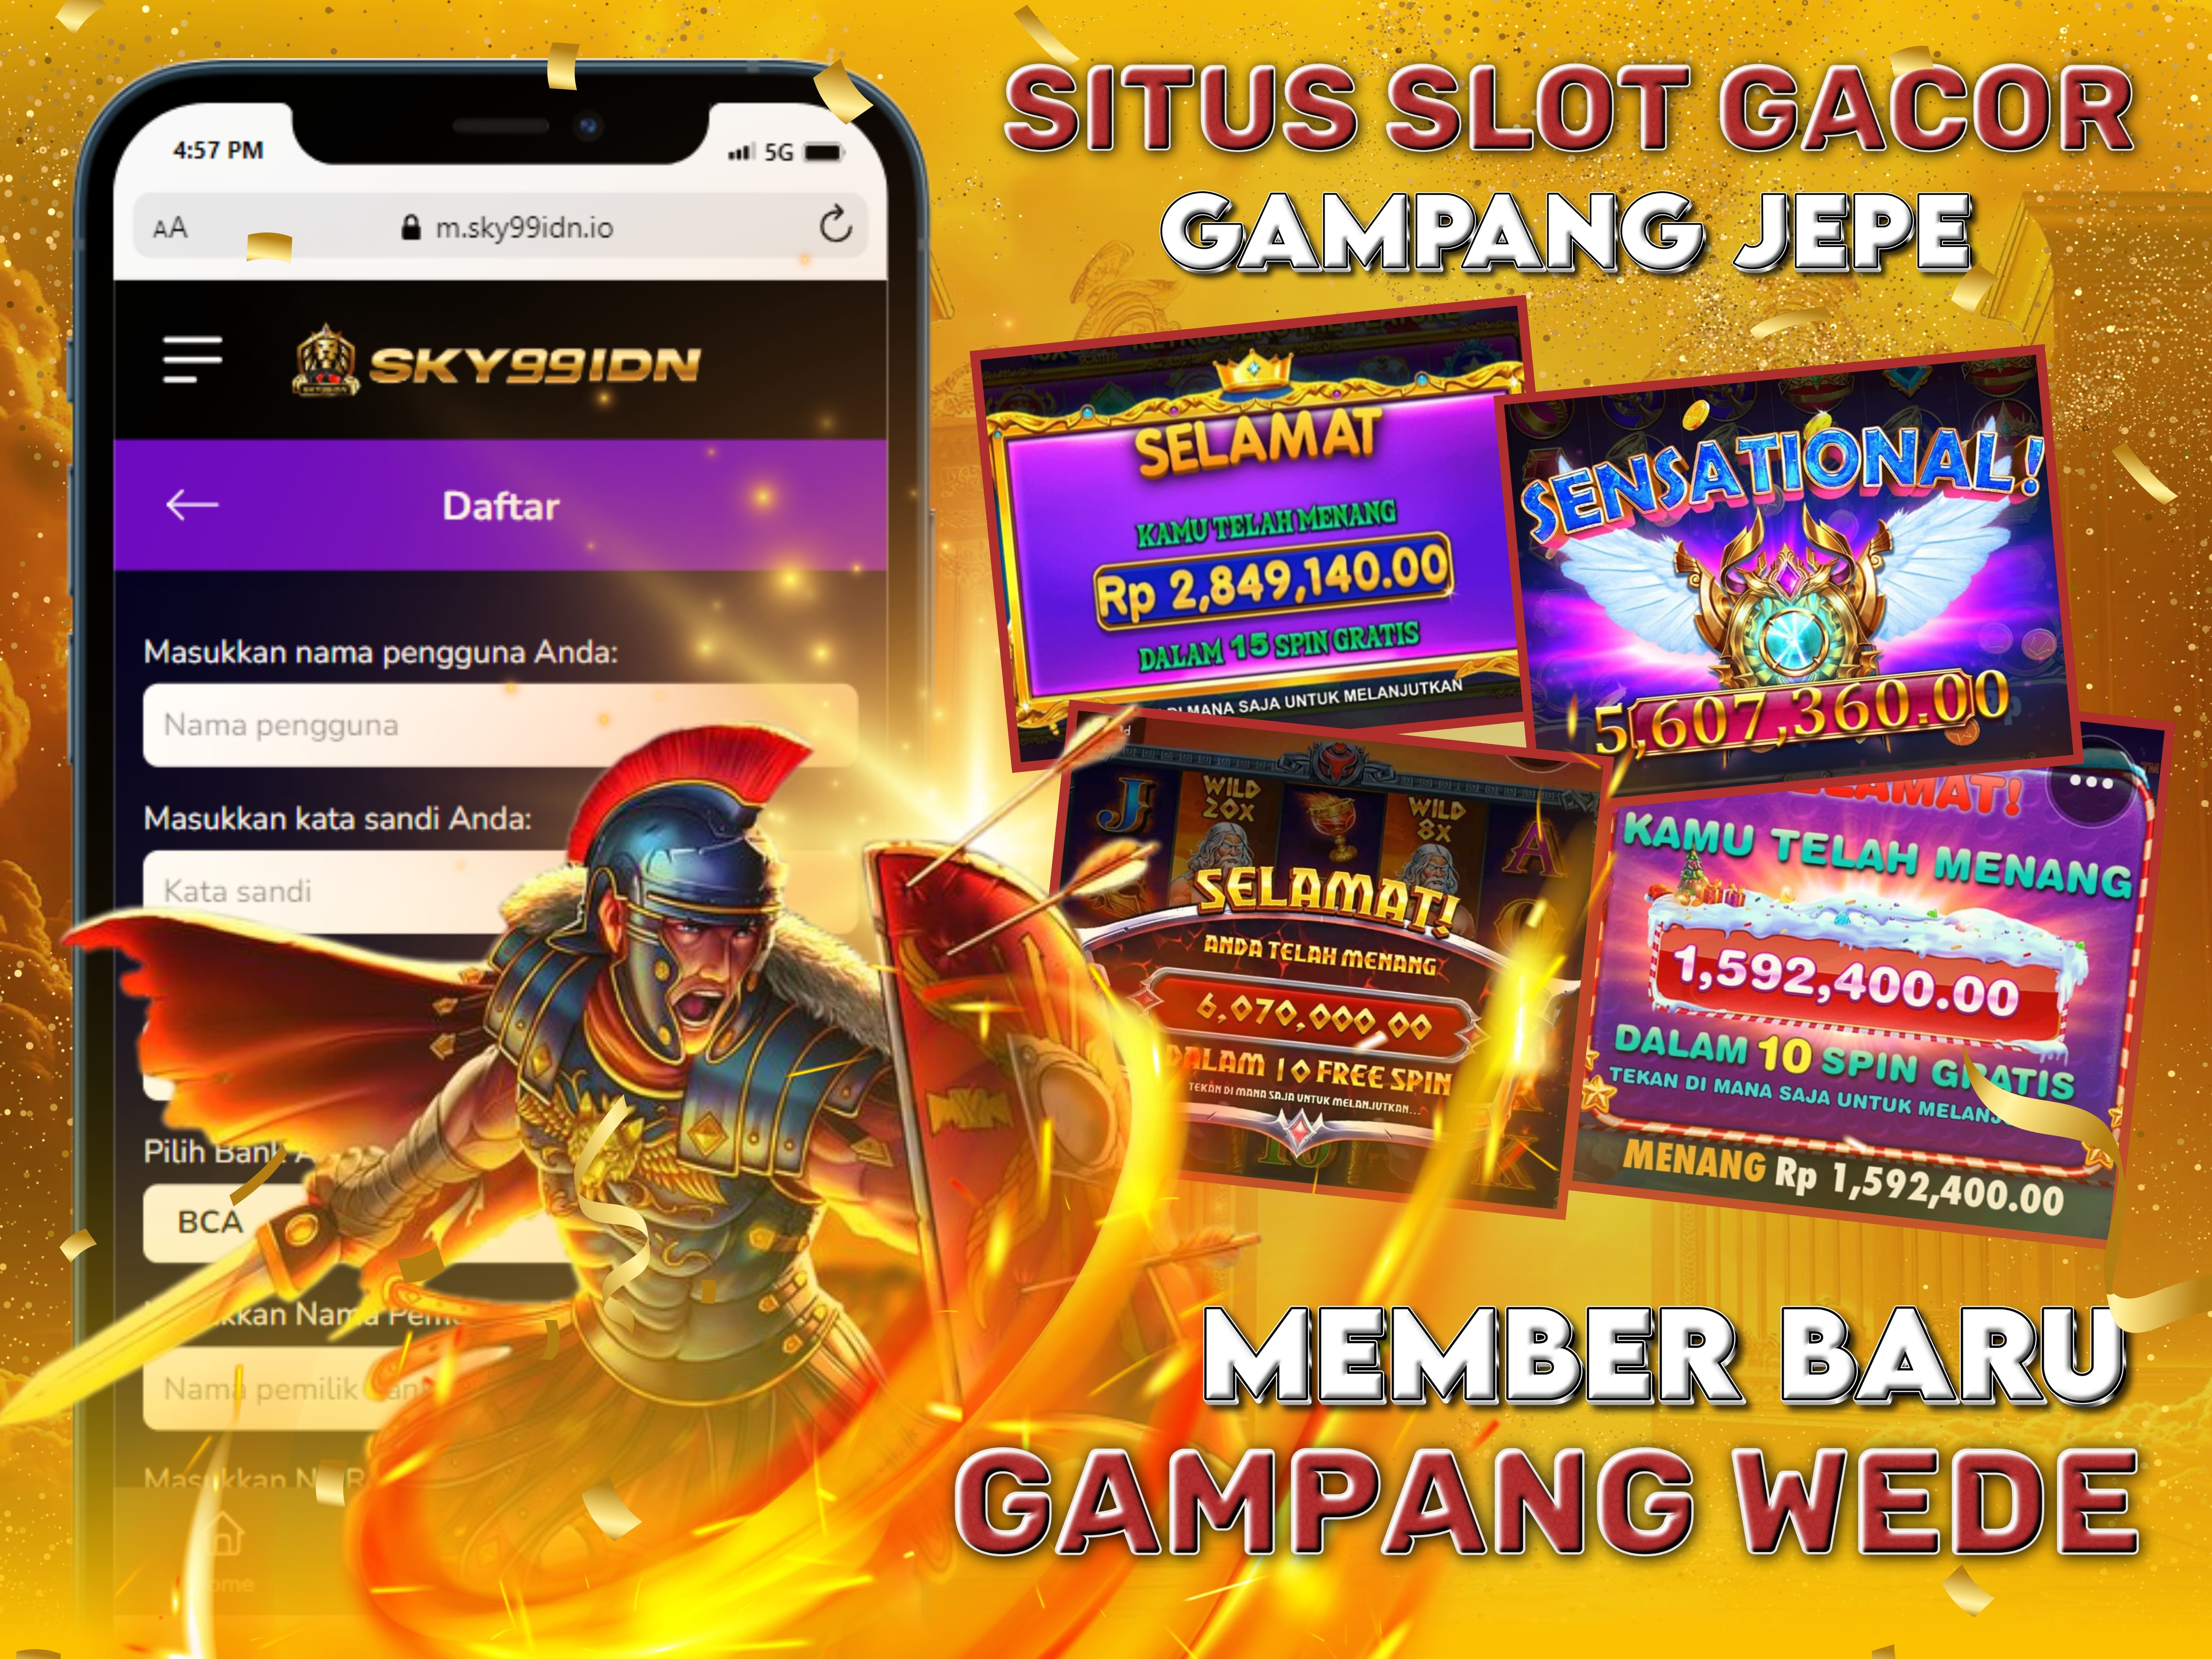 SKY99IDN 💥 Link Daftar Situs Slot Gacor Maxwin Hari Ini Terbaik di Indonesia